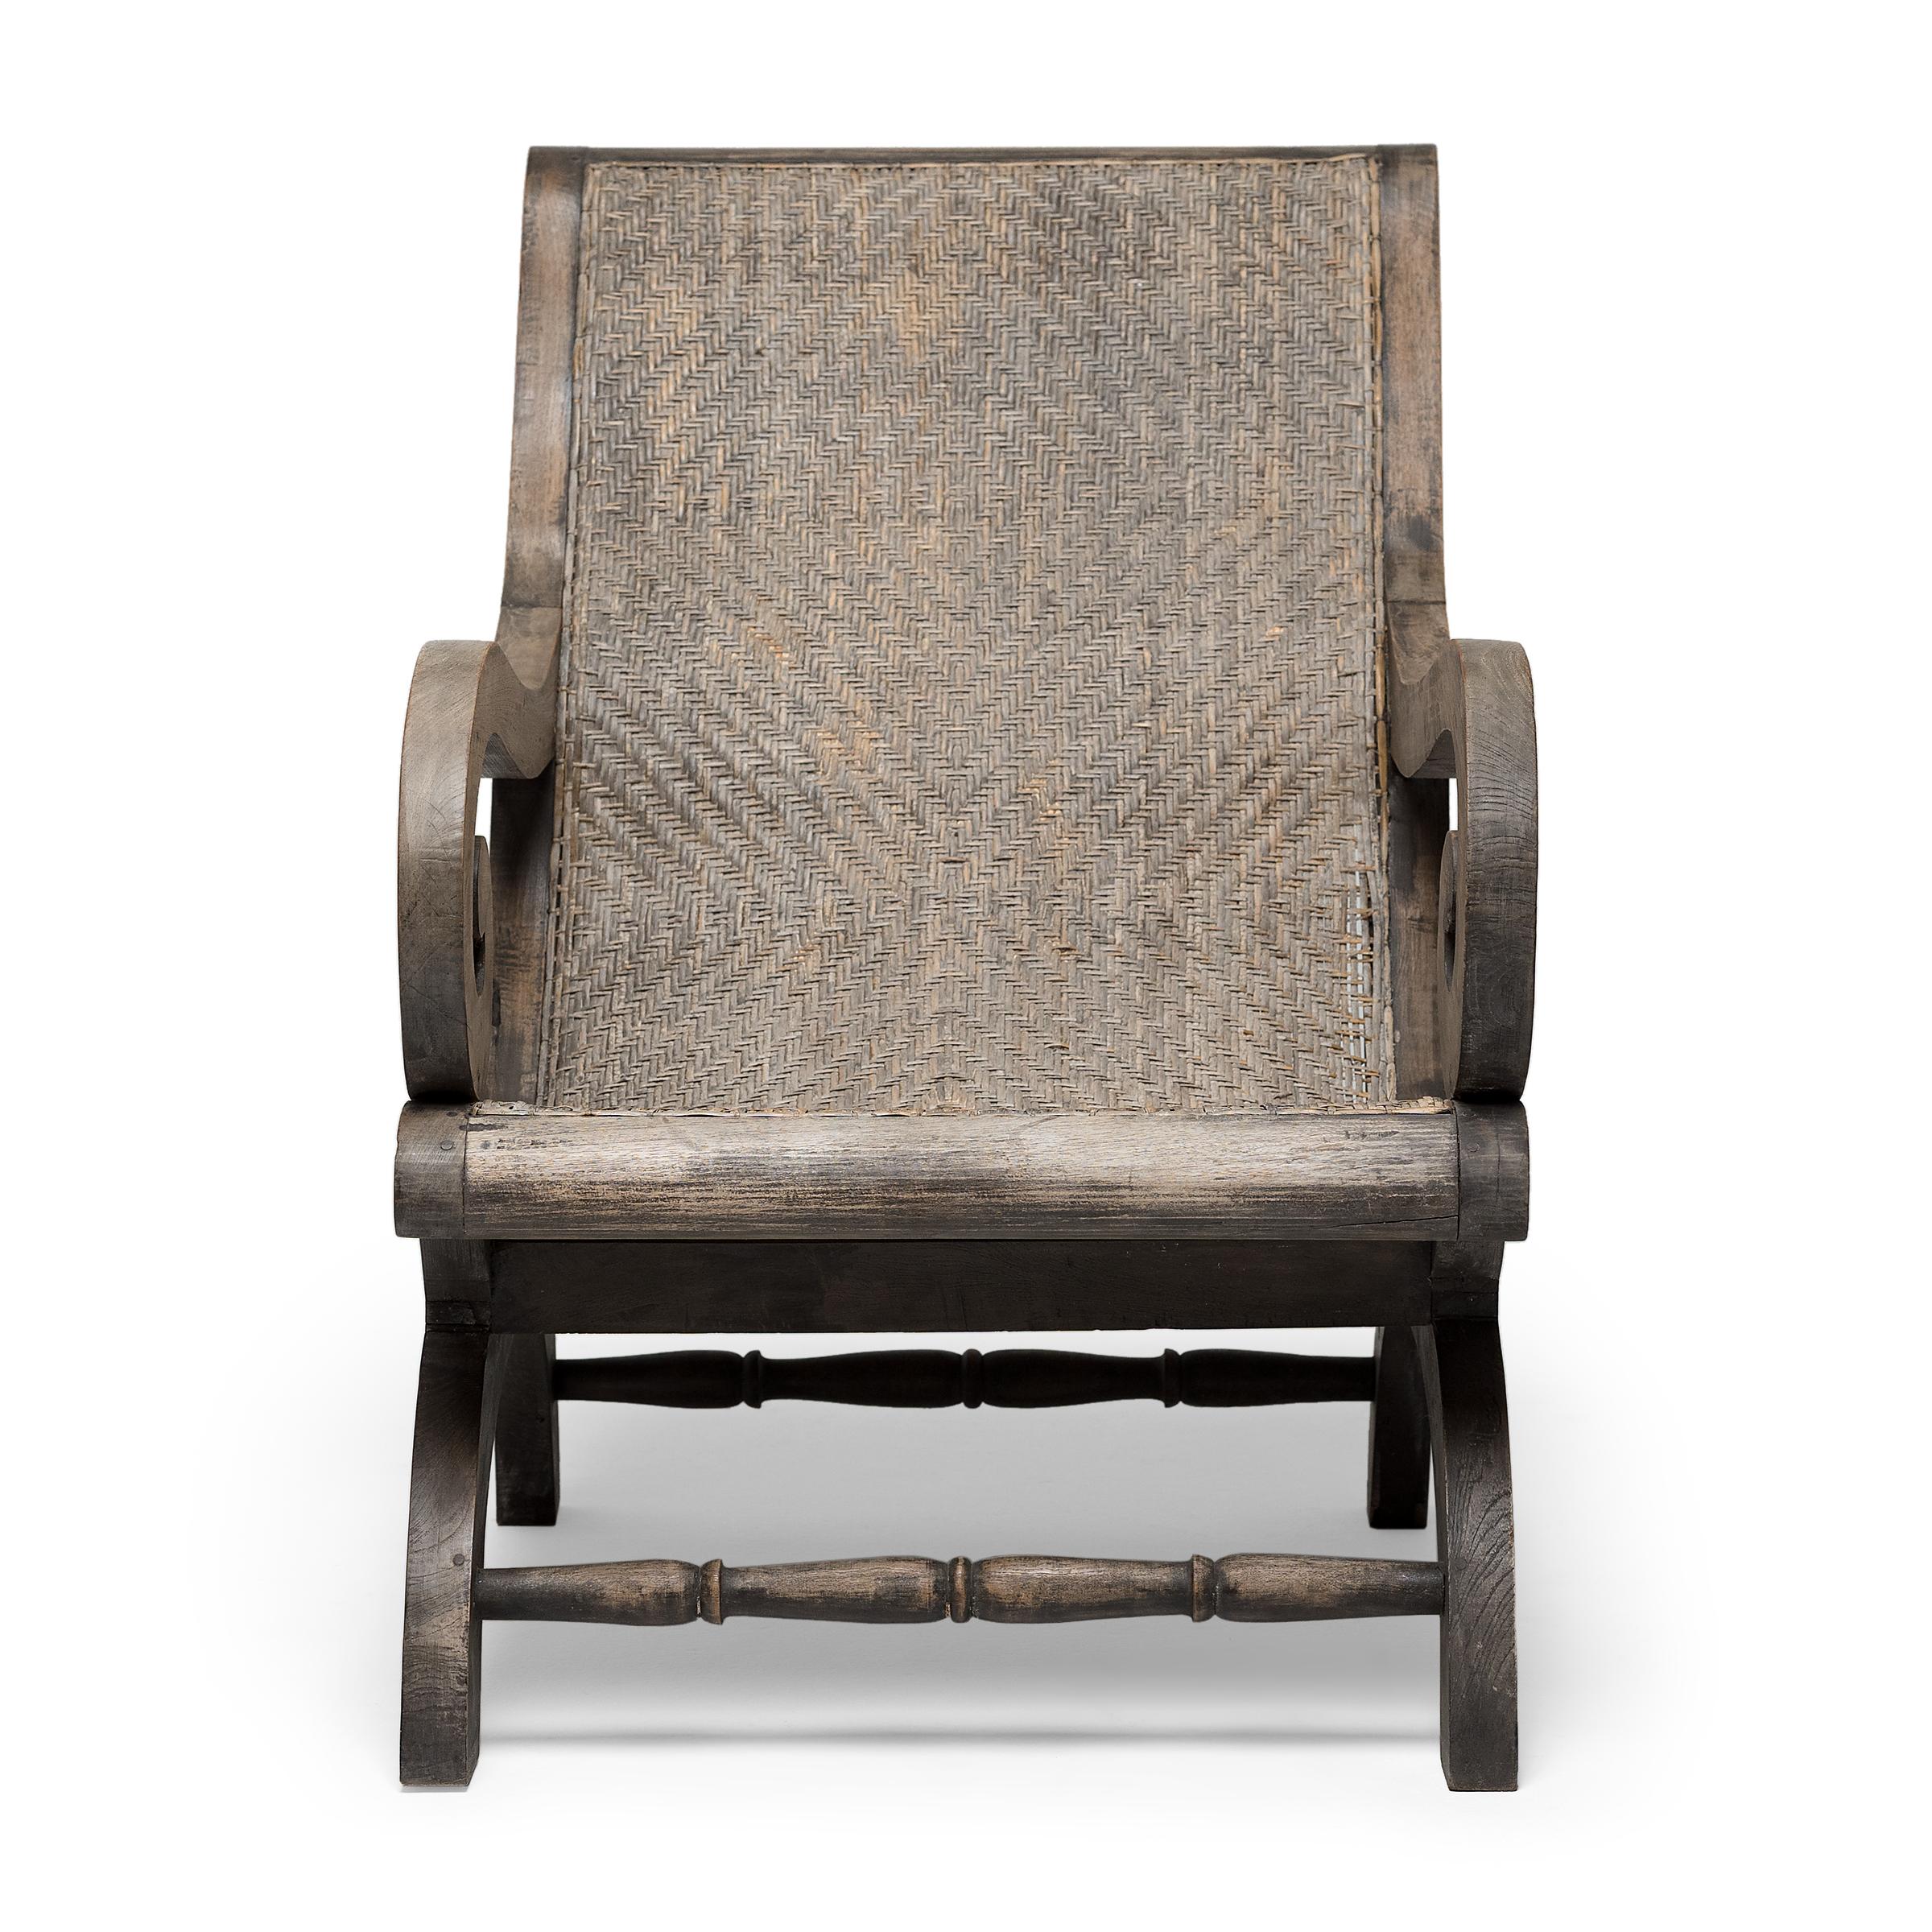 Ce fauteuil en rotin tressé rappelle le style Grand British Coloni du début du 20e siècle, alliant les intérieurs britanniques raffinés à l'esthétique naturelle indienne. La chaise de plantation se caractérise par sa structure en teck, son assise